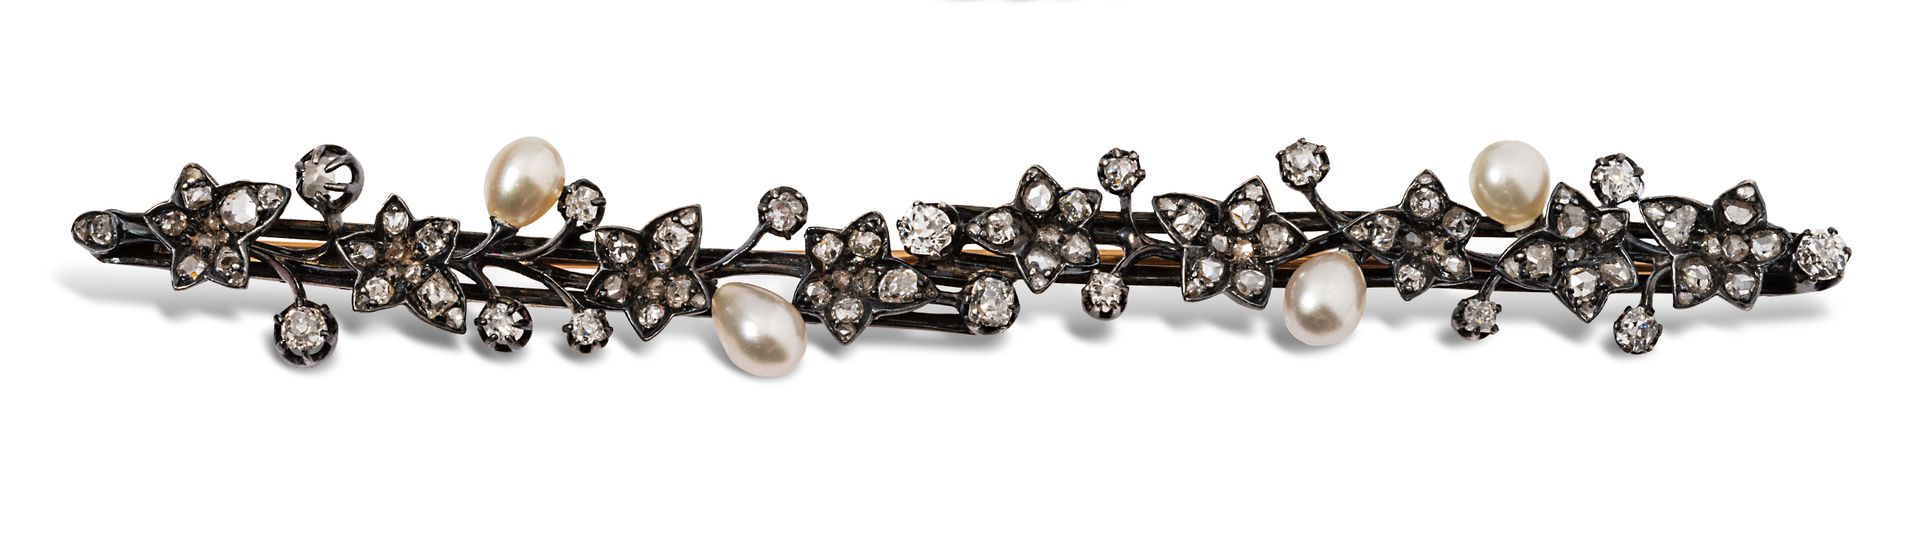 Null 镶嵌有老式切割和玫瑰切割钻石的常春藤银质胸针，装饰有可能是精美的巴洛克式珍珠。

19世纪末的作品。

长度：10厘米左右。- 毛重 : 14,9 g&hellip;